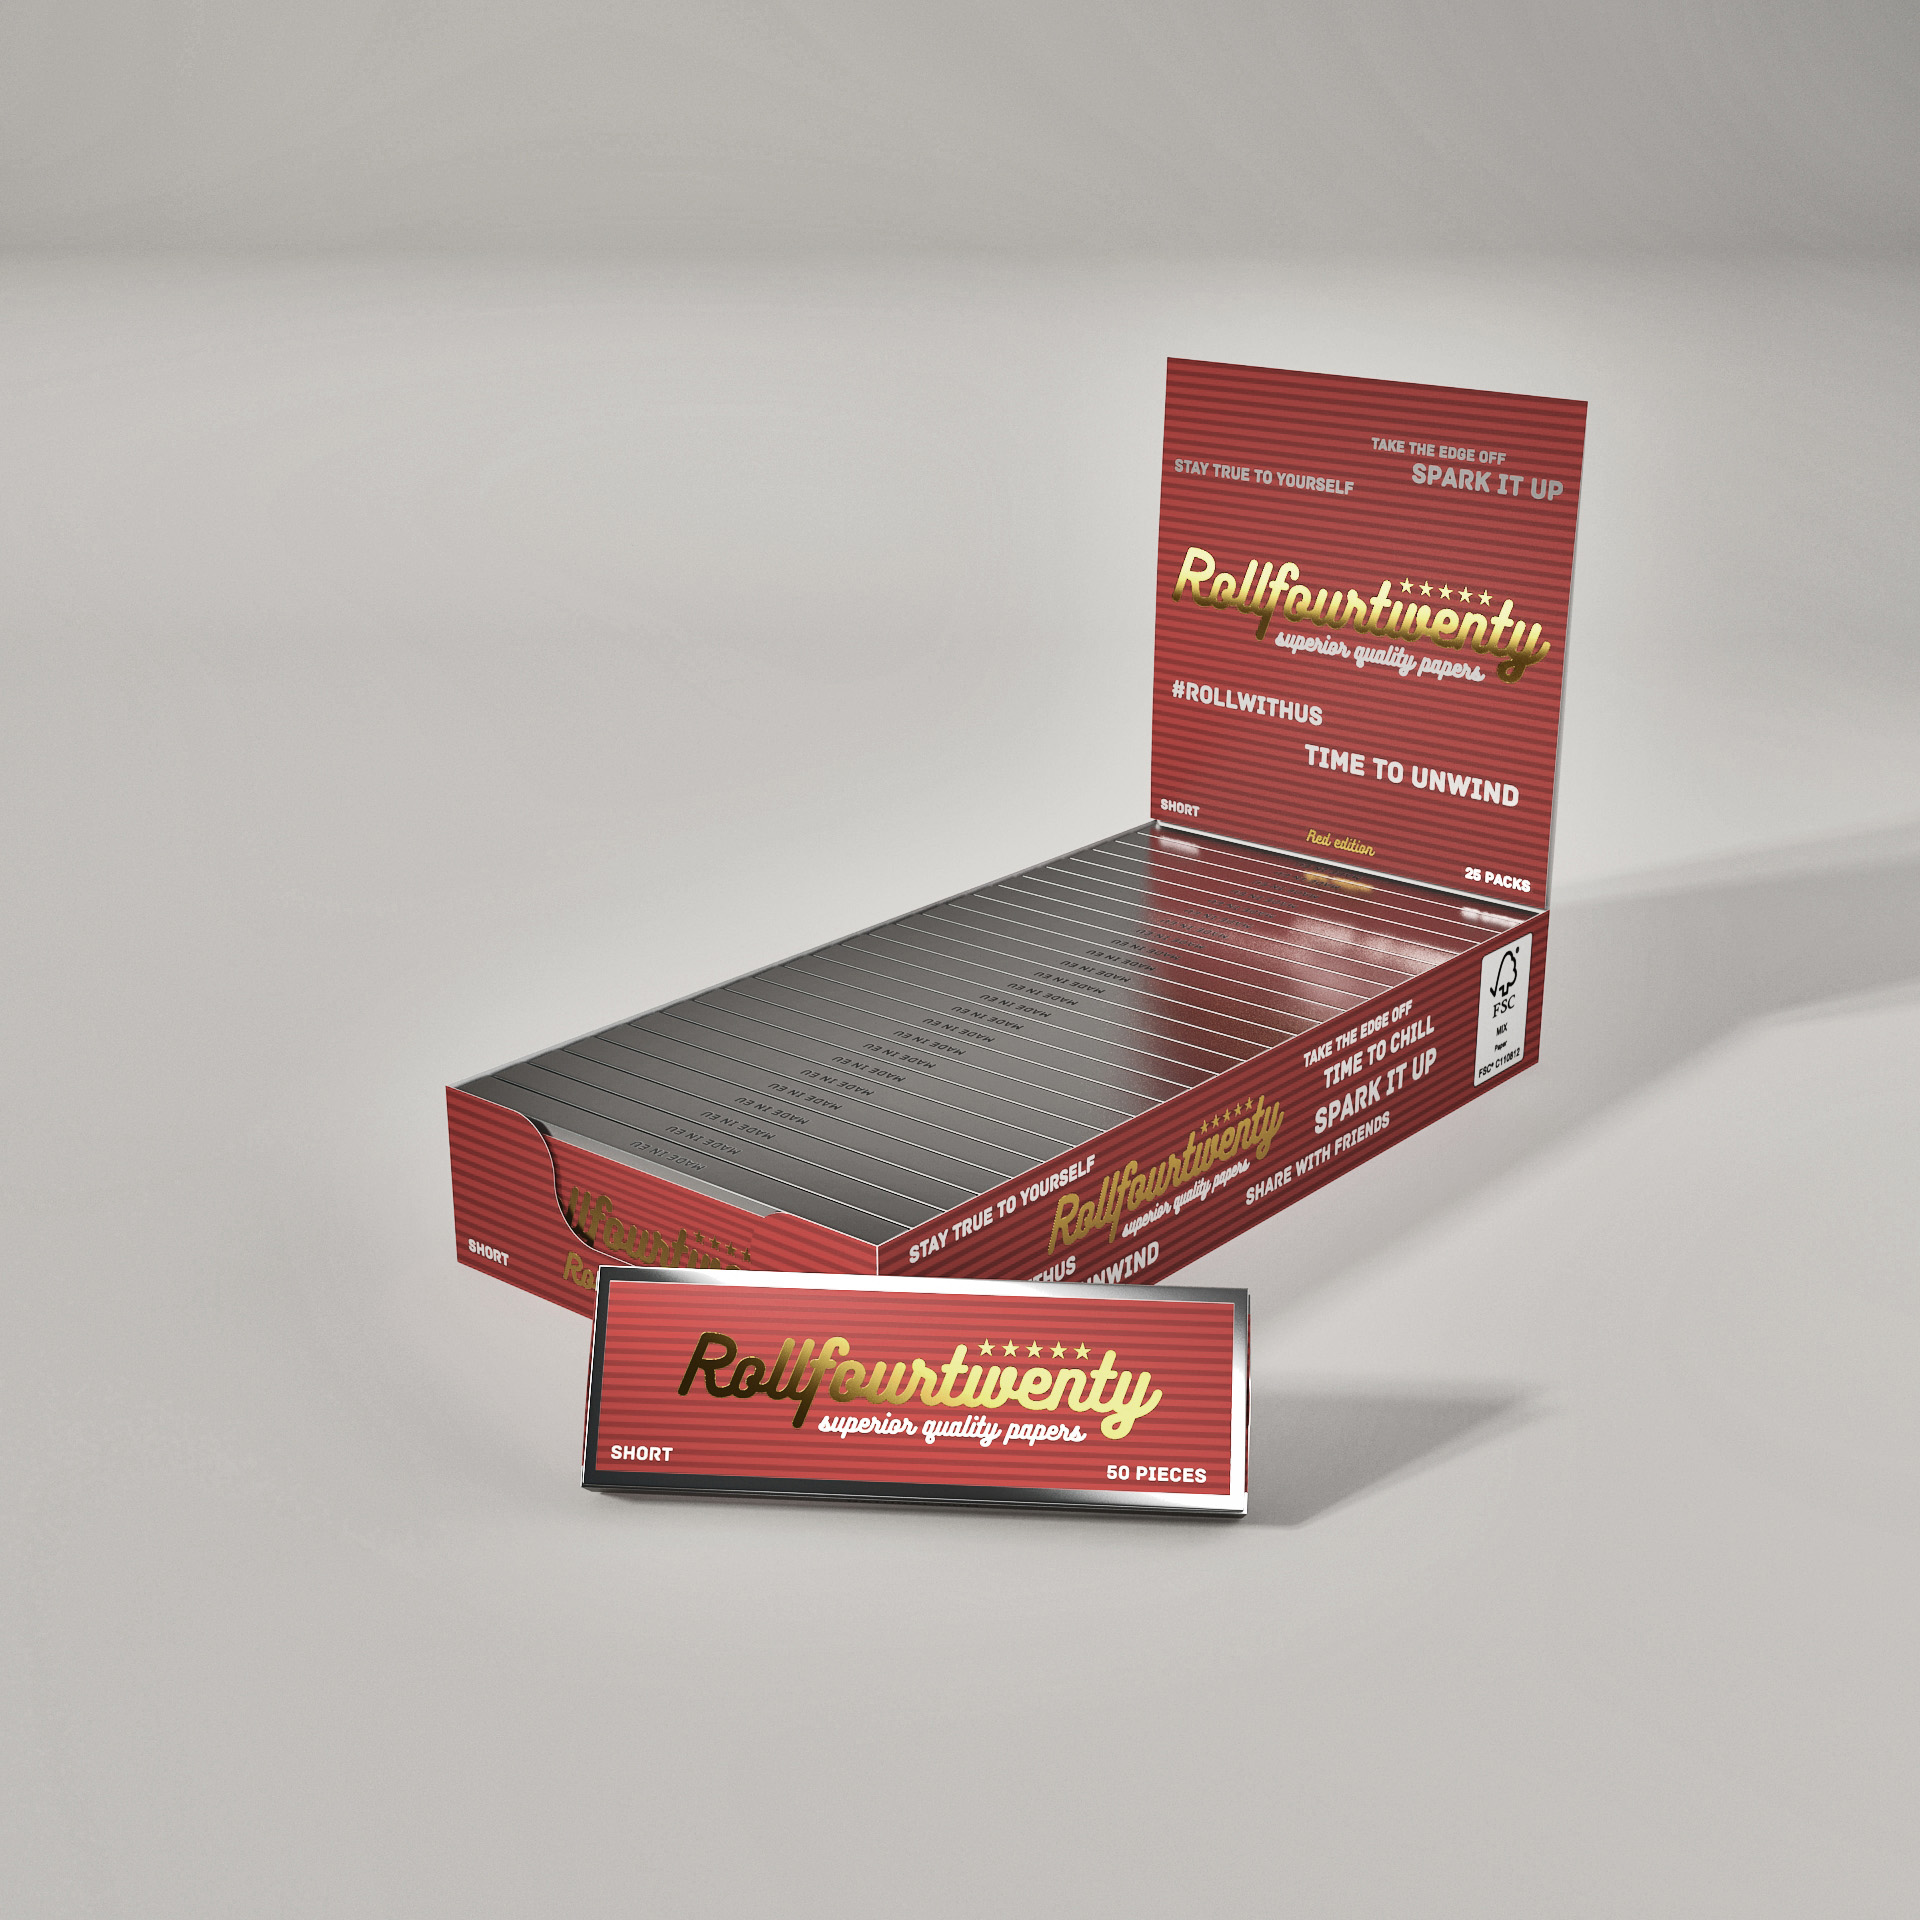 R420 cigaretové papírky krátké - Short v červené nebo stříbrné barvě - box 25 ks